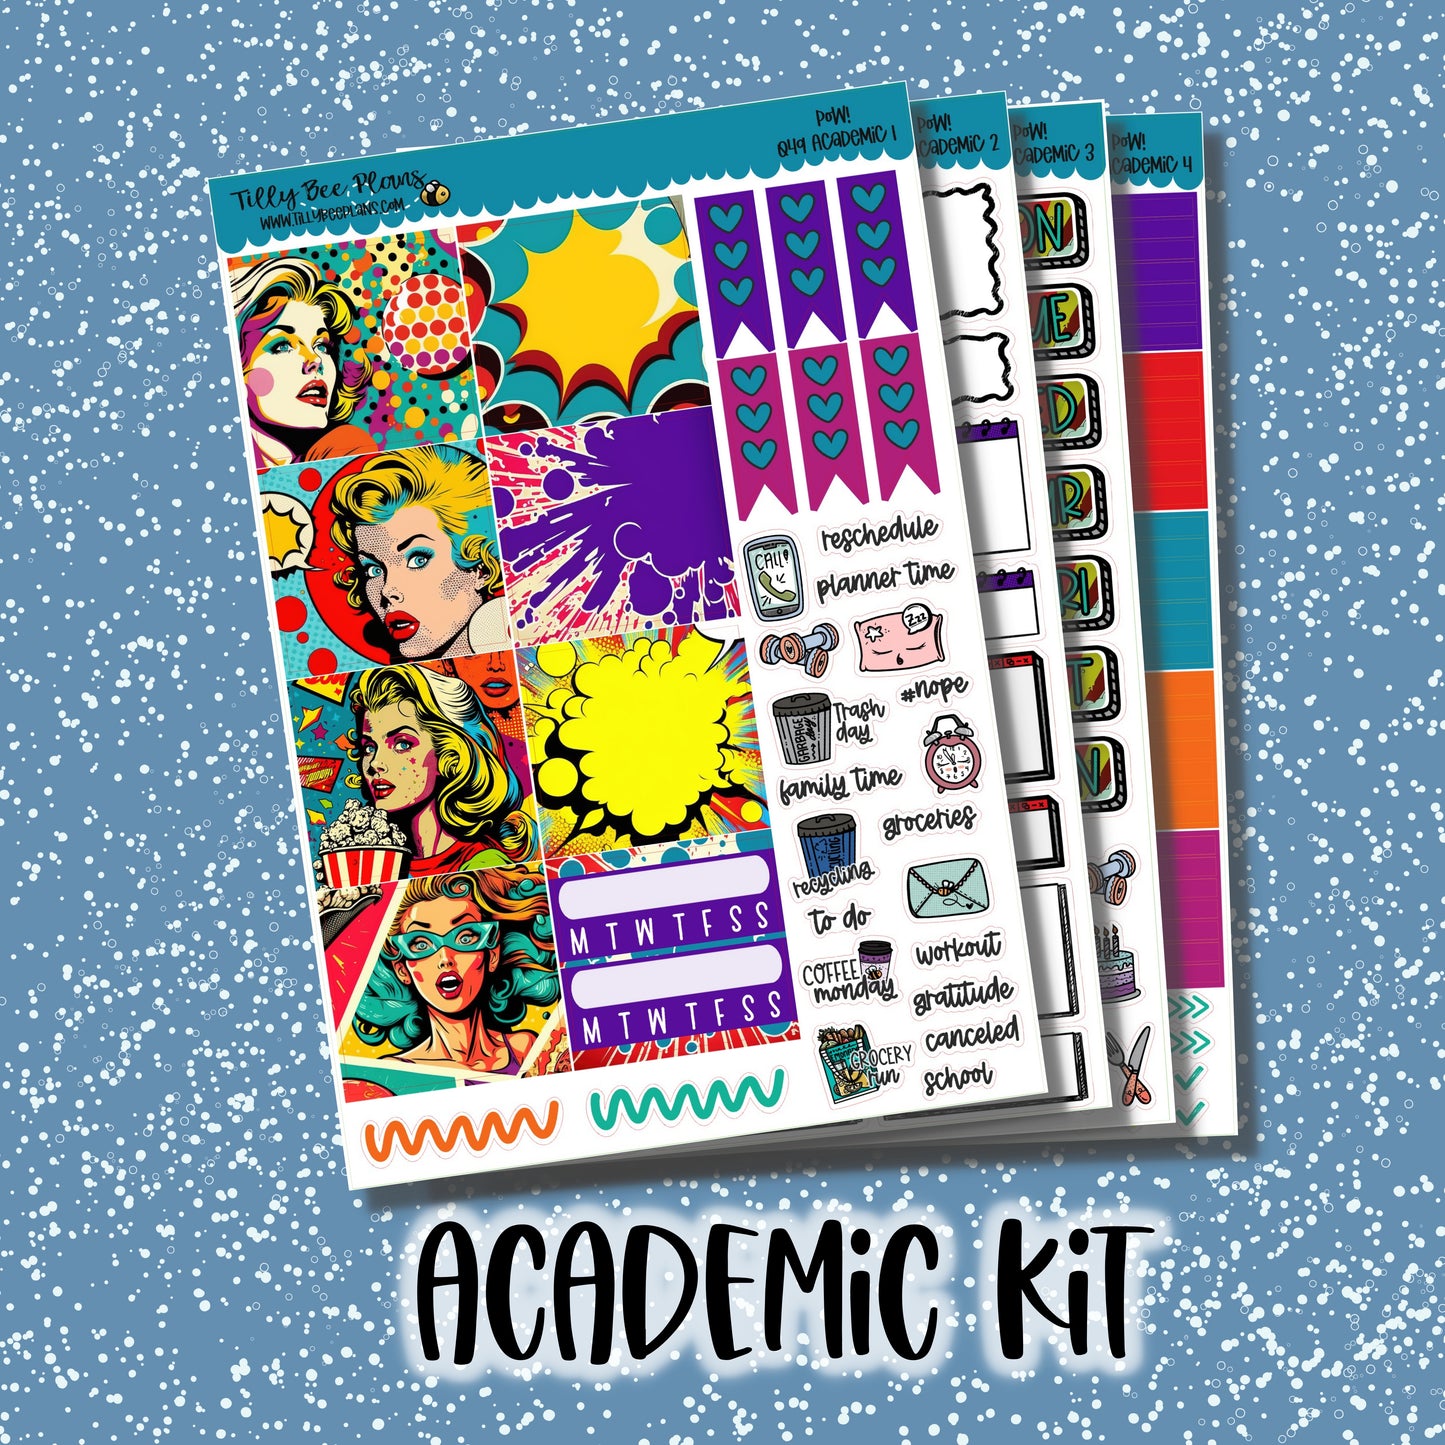 Pow! - Academic Kit 049A